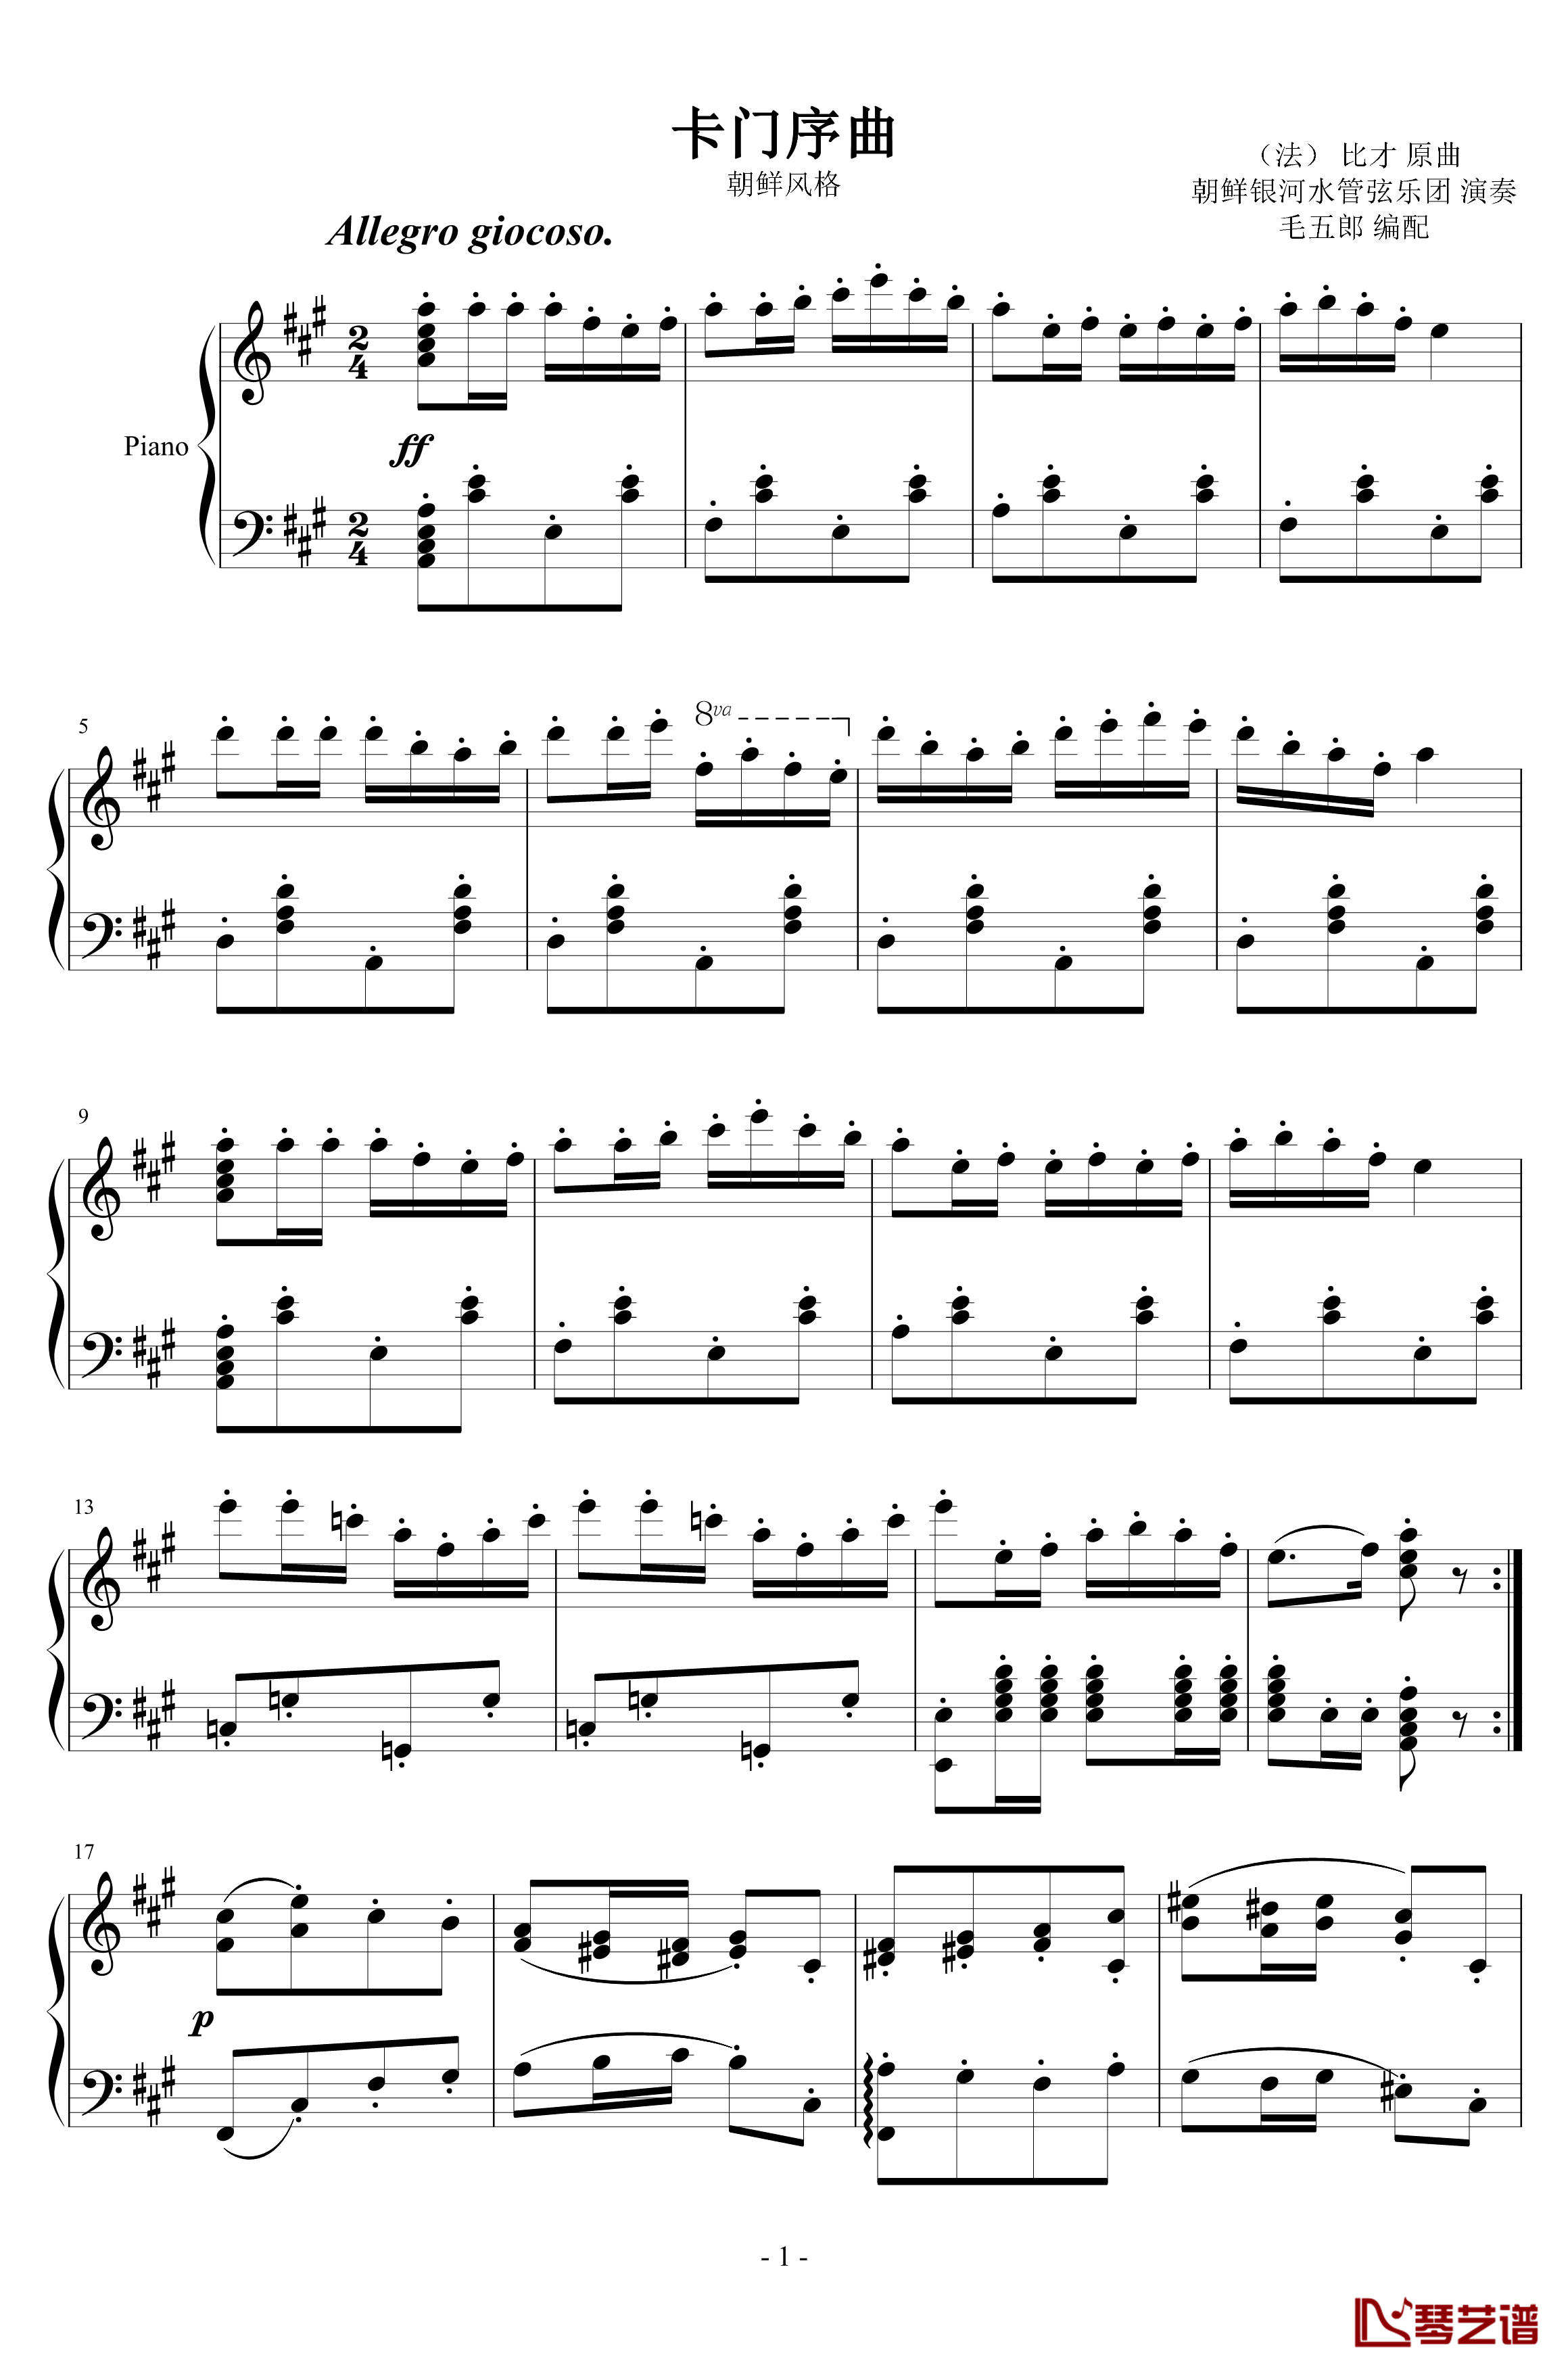 卡门序曲钢琴谱-朝鲜风格-比才-Bizet1